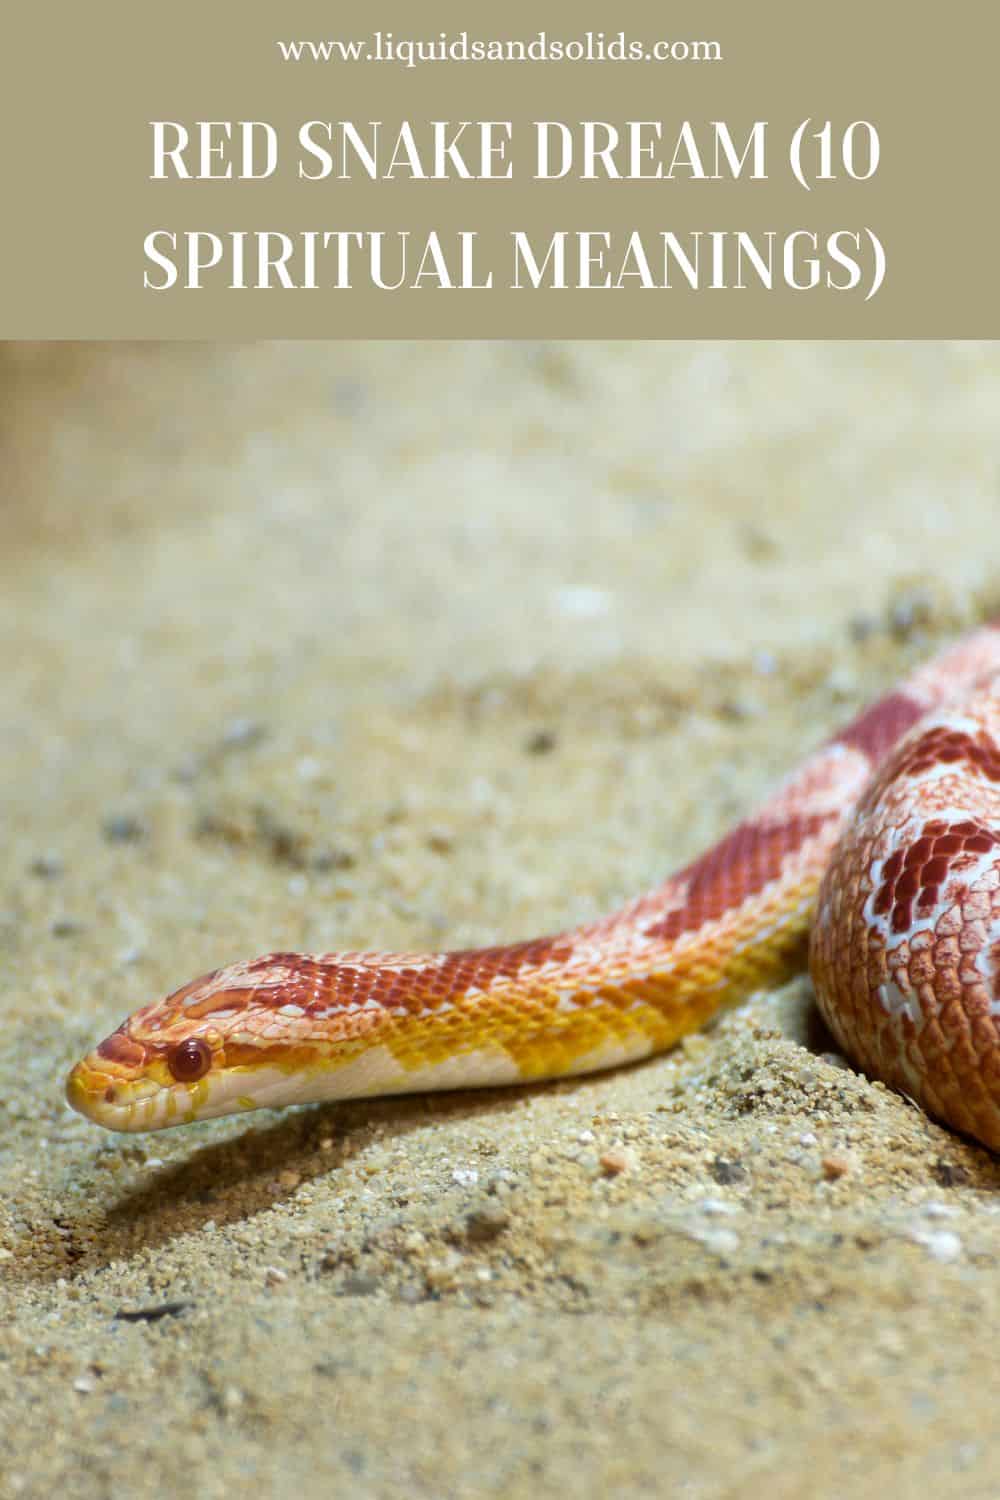  Rêve de serpent rouge (10 significations spirituelles)